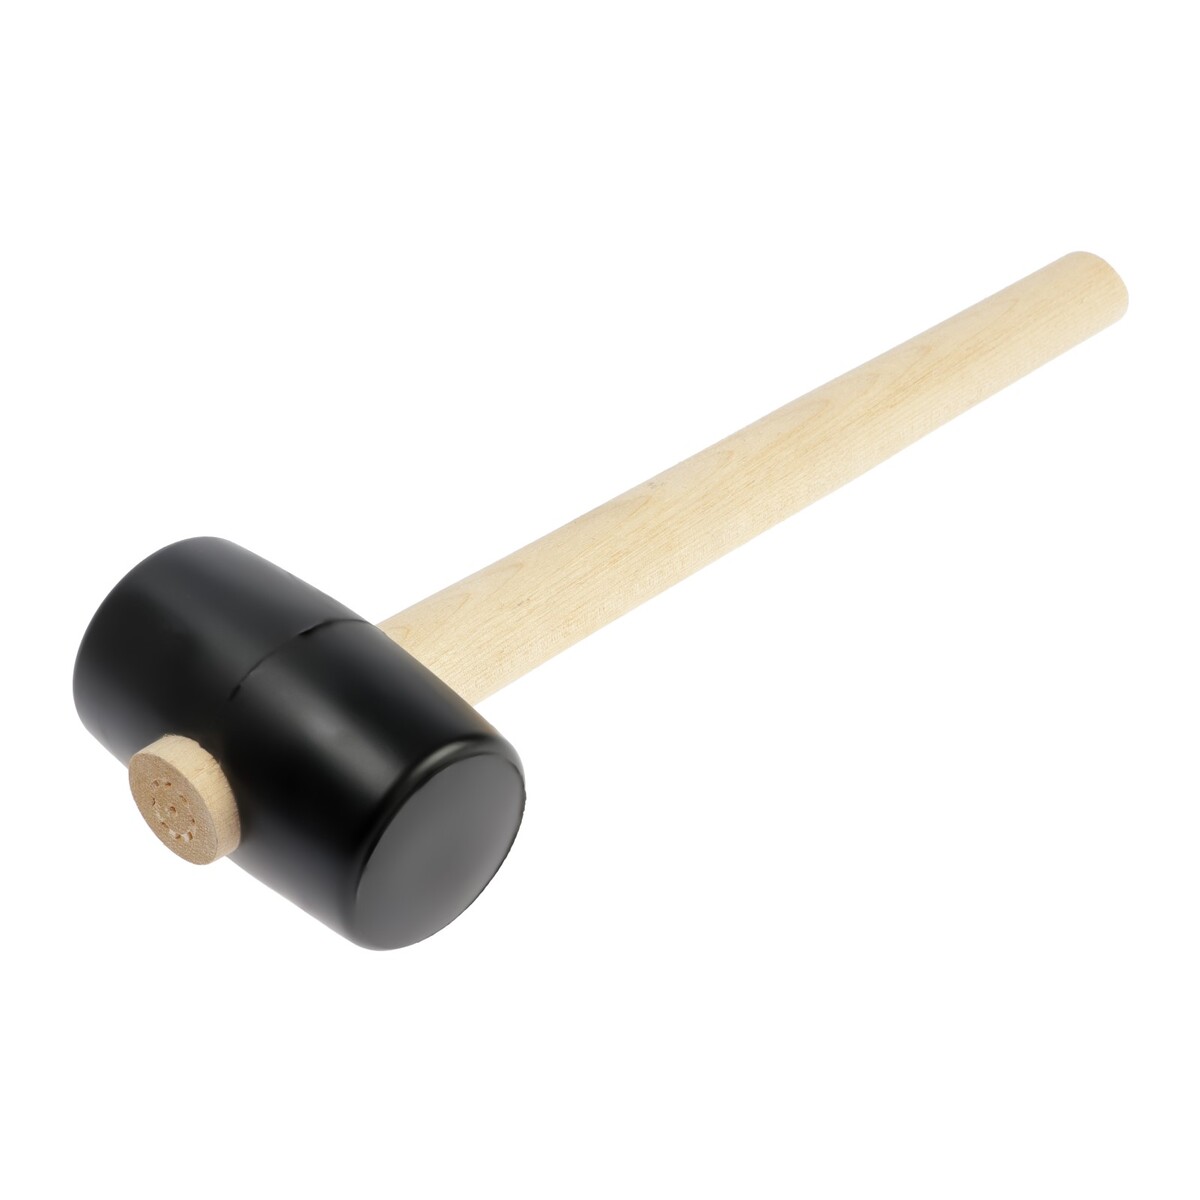 Киянка лом, деревянная рукоятка, черная резина, 55 мм, 300 г киянка тундра деревянная рукоятка черная резина 450 г